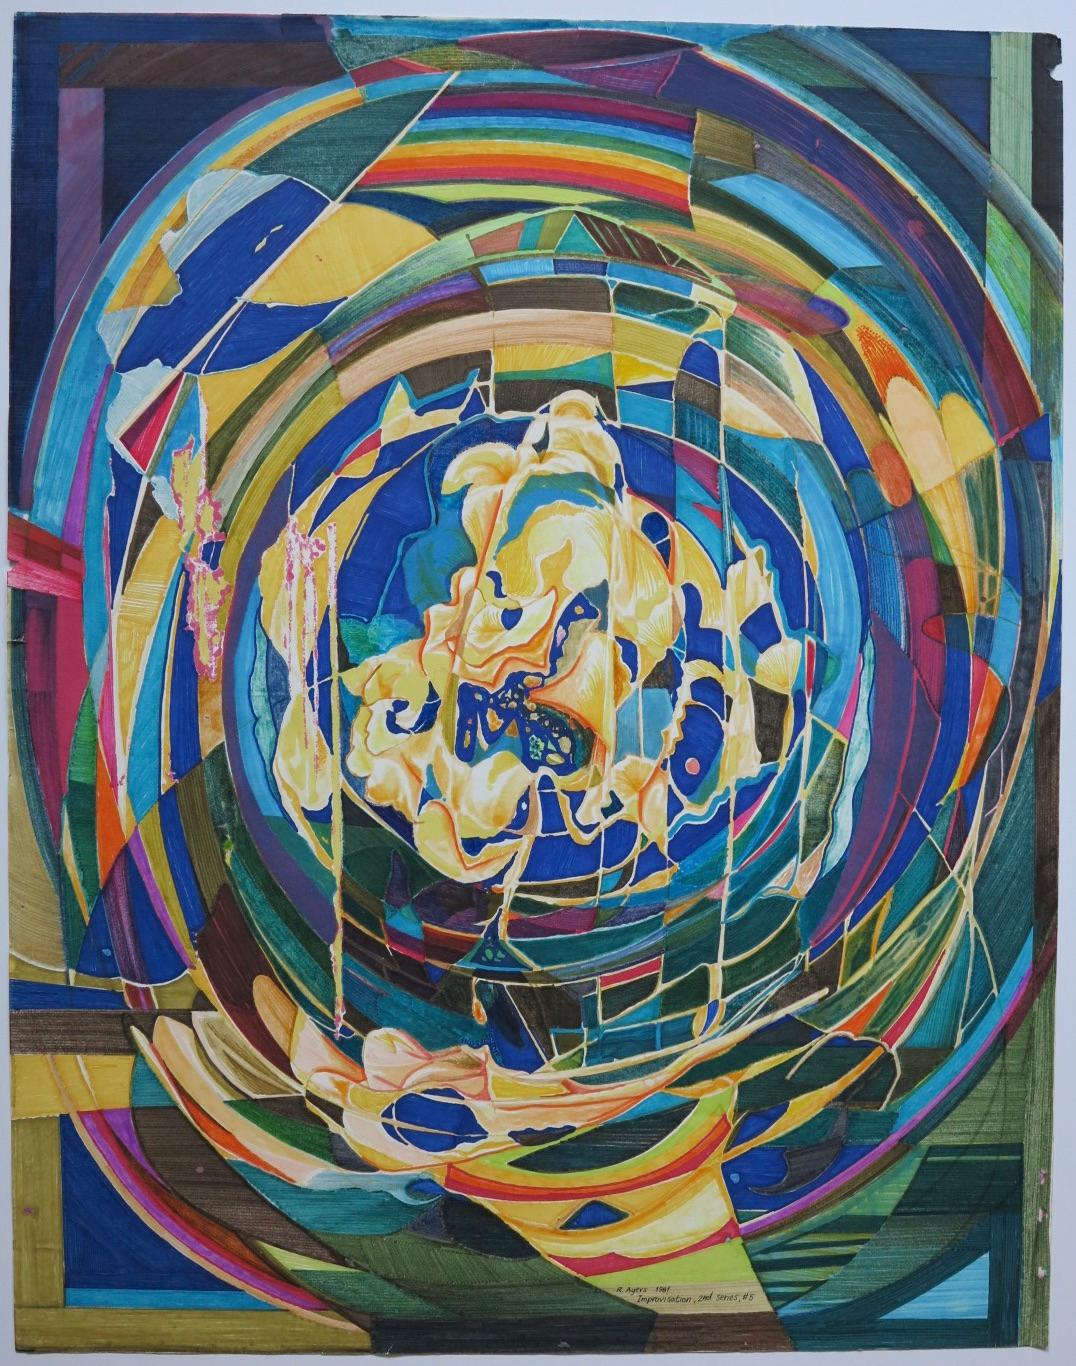 Roland Ayers Abstract Painting – Abstraktes afro-amerikanisches Künstlergemälde der Improvisation. 